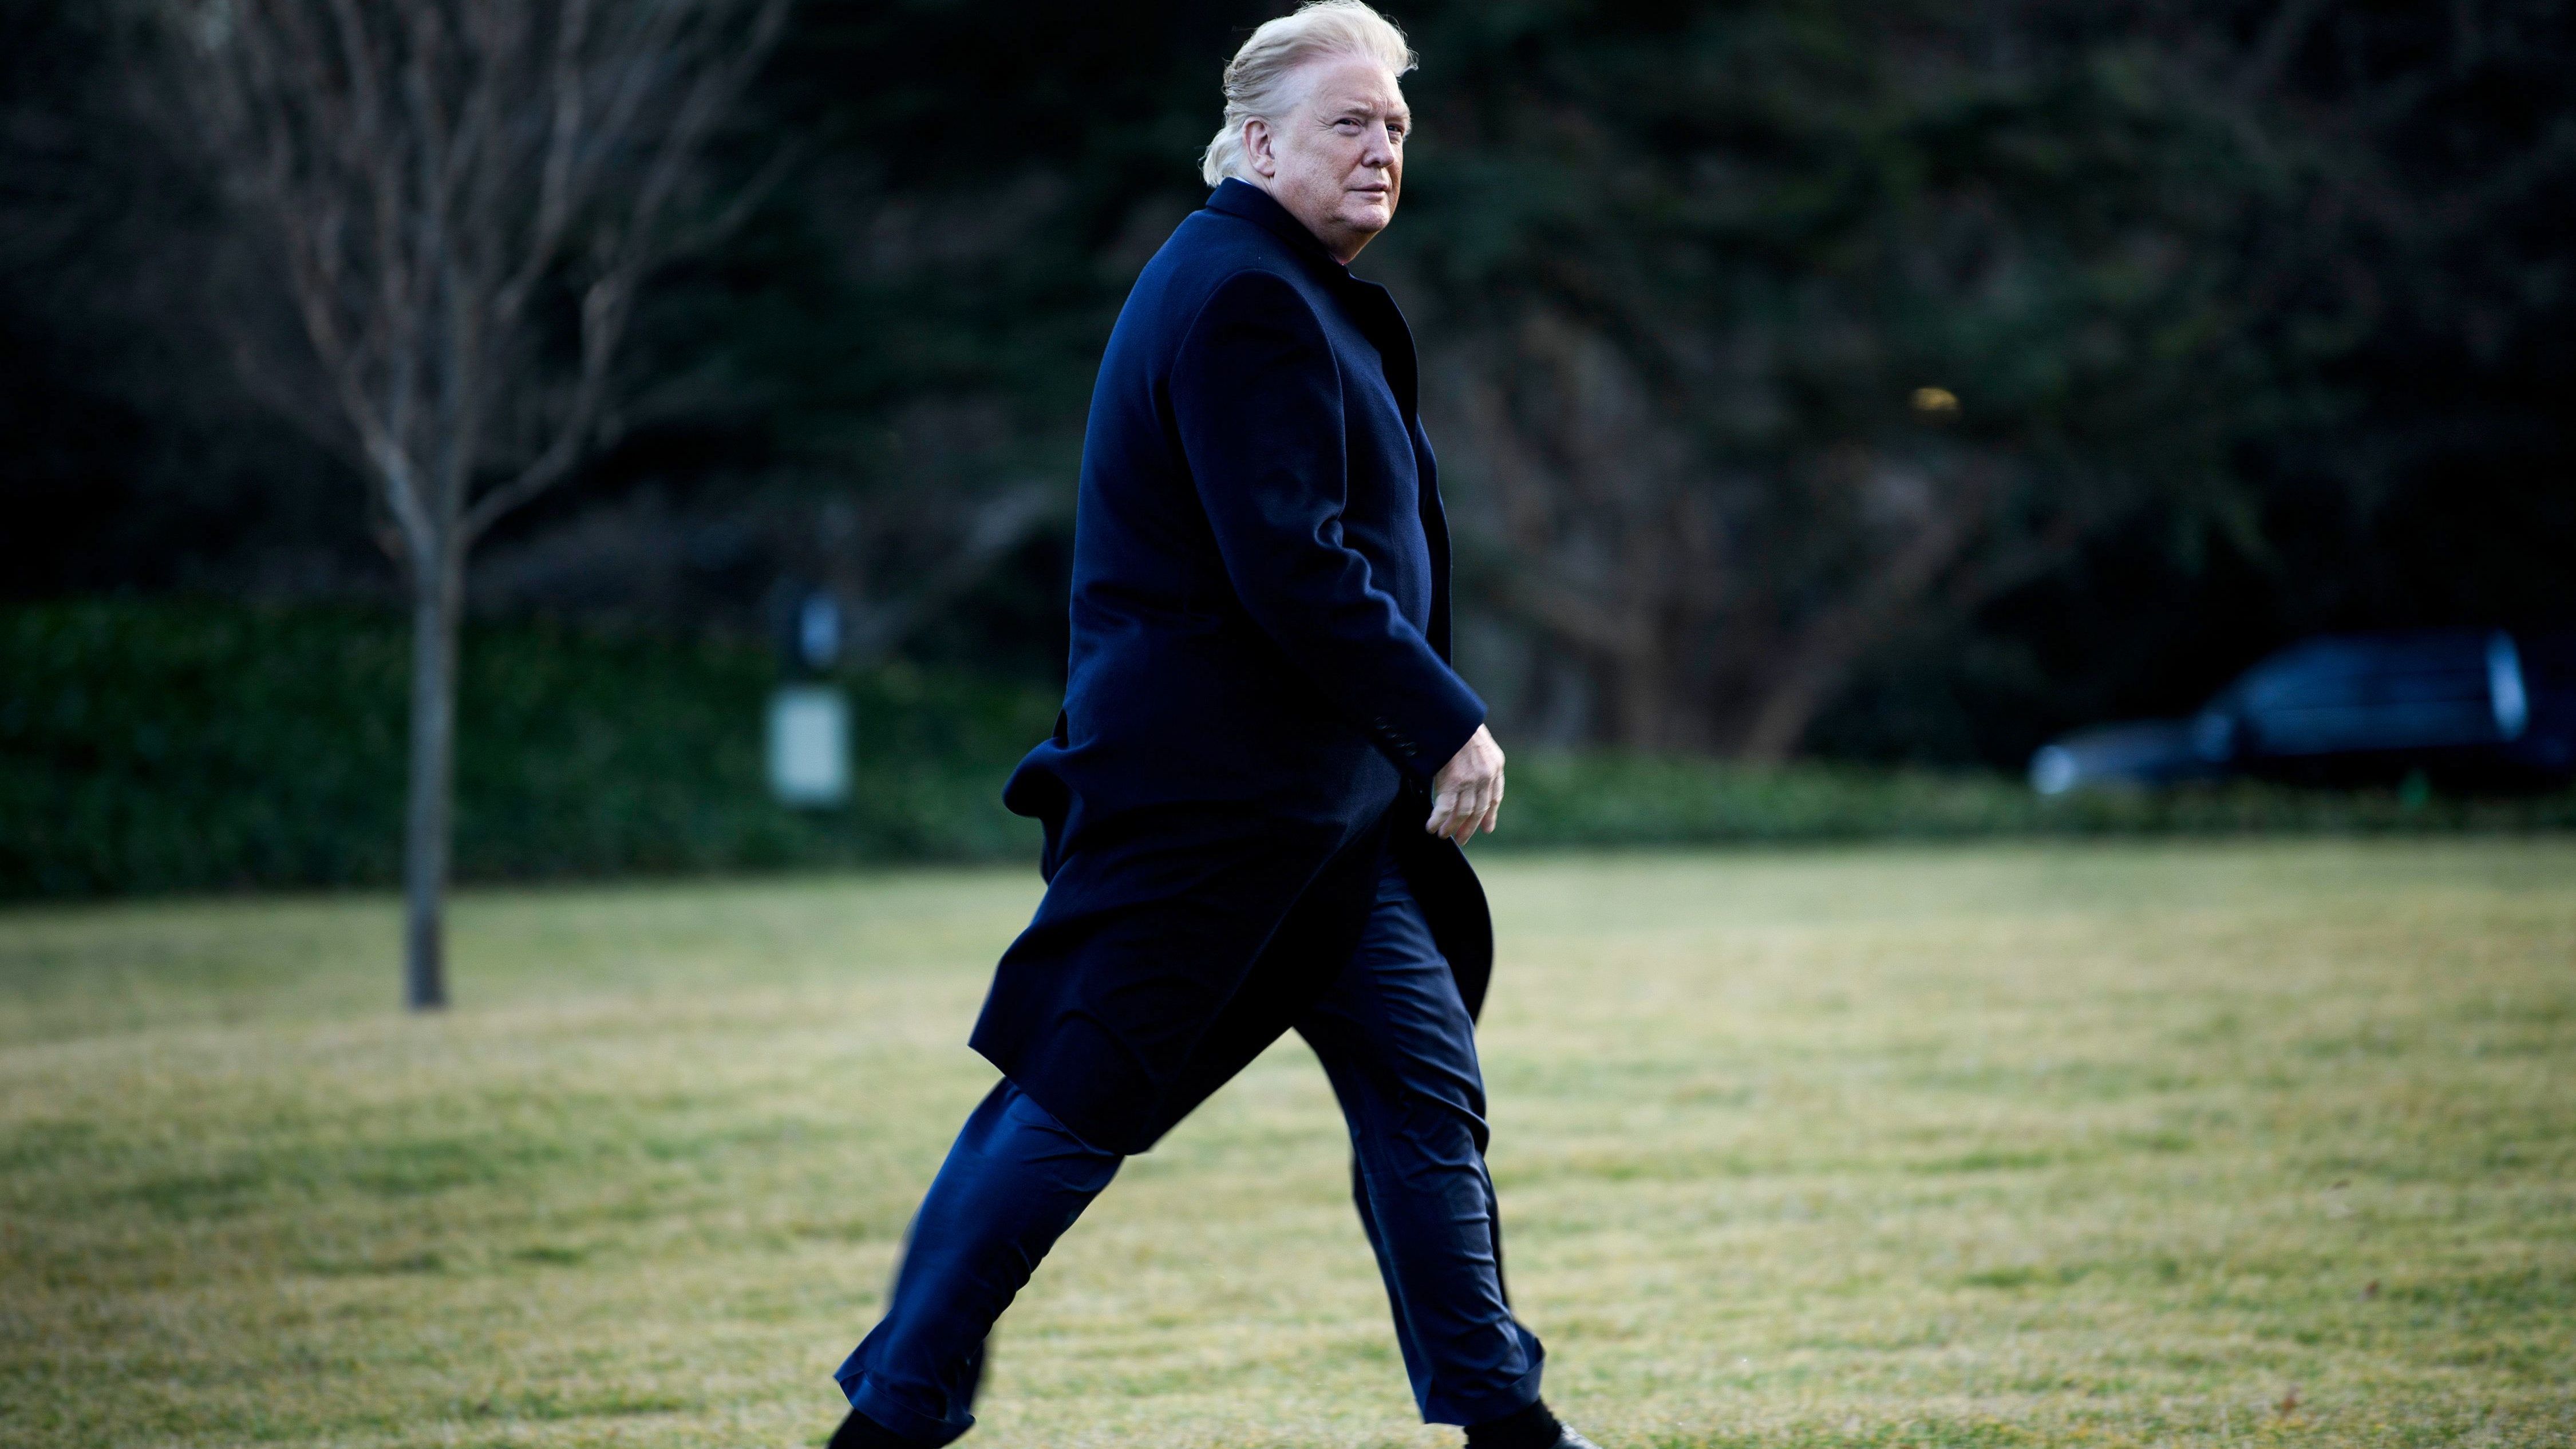 Félrefújta a szél Donald Trump haját, az eredmény pedig csodálatos